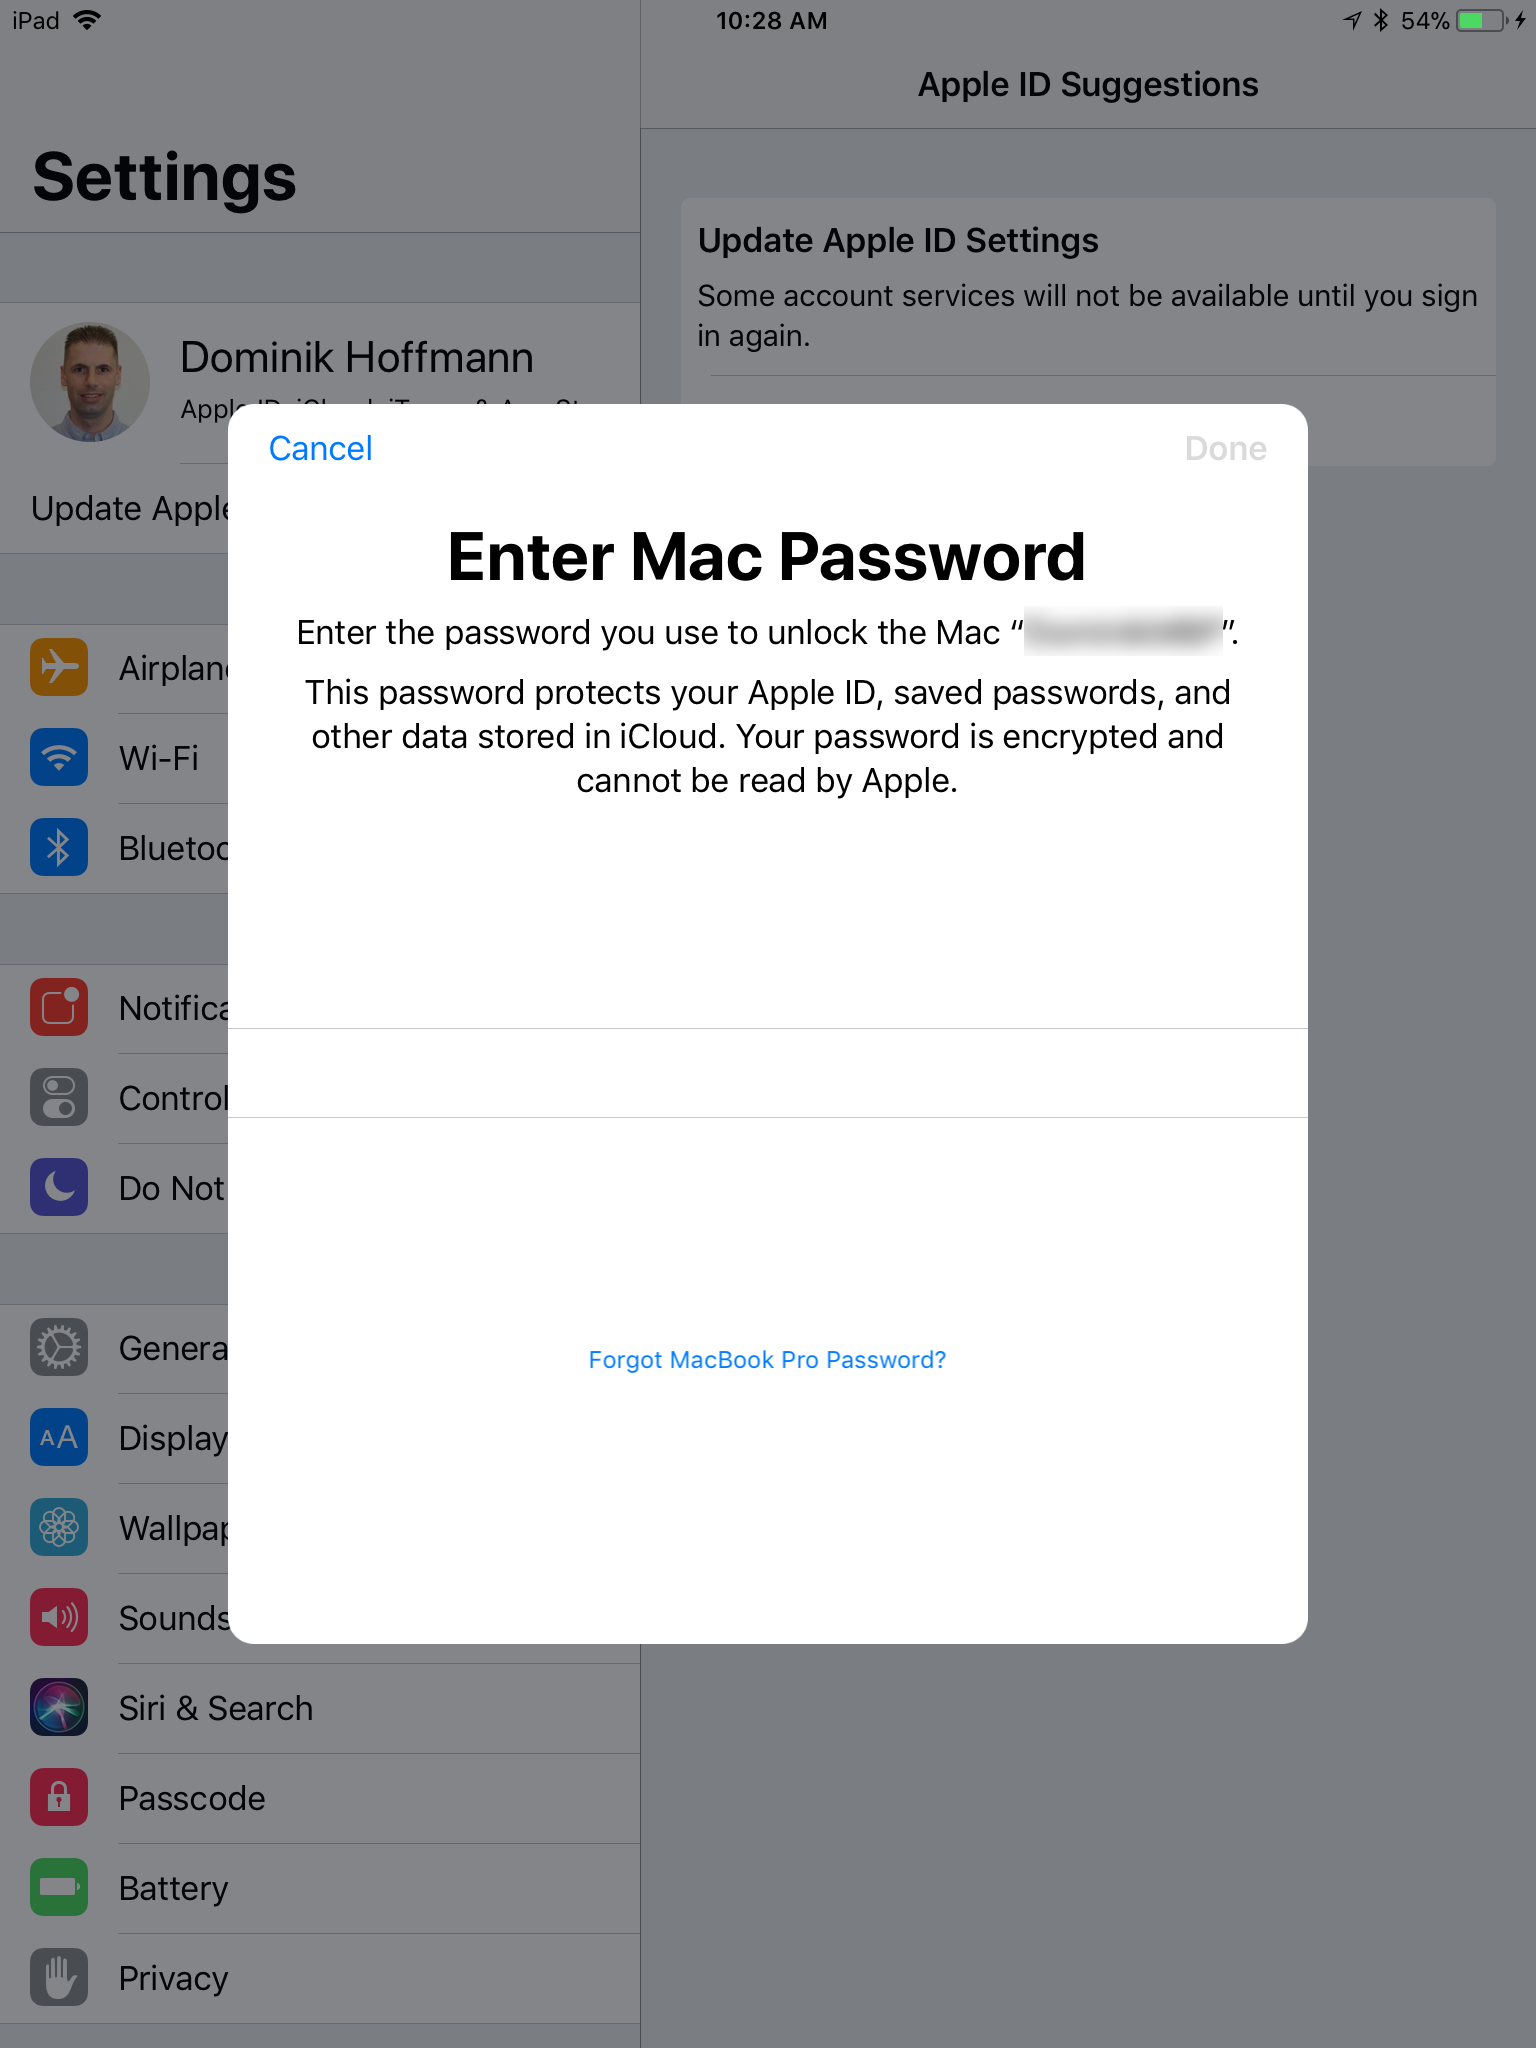 macbook pro is stuck on enter apple id password screen